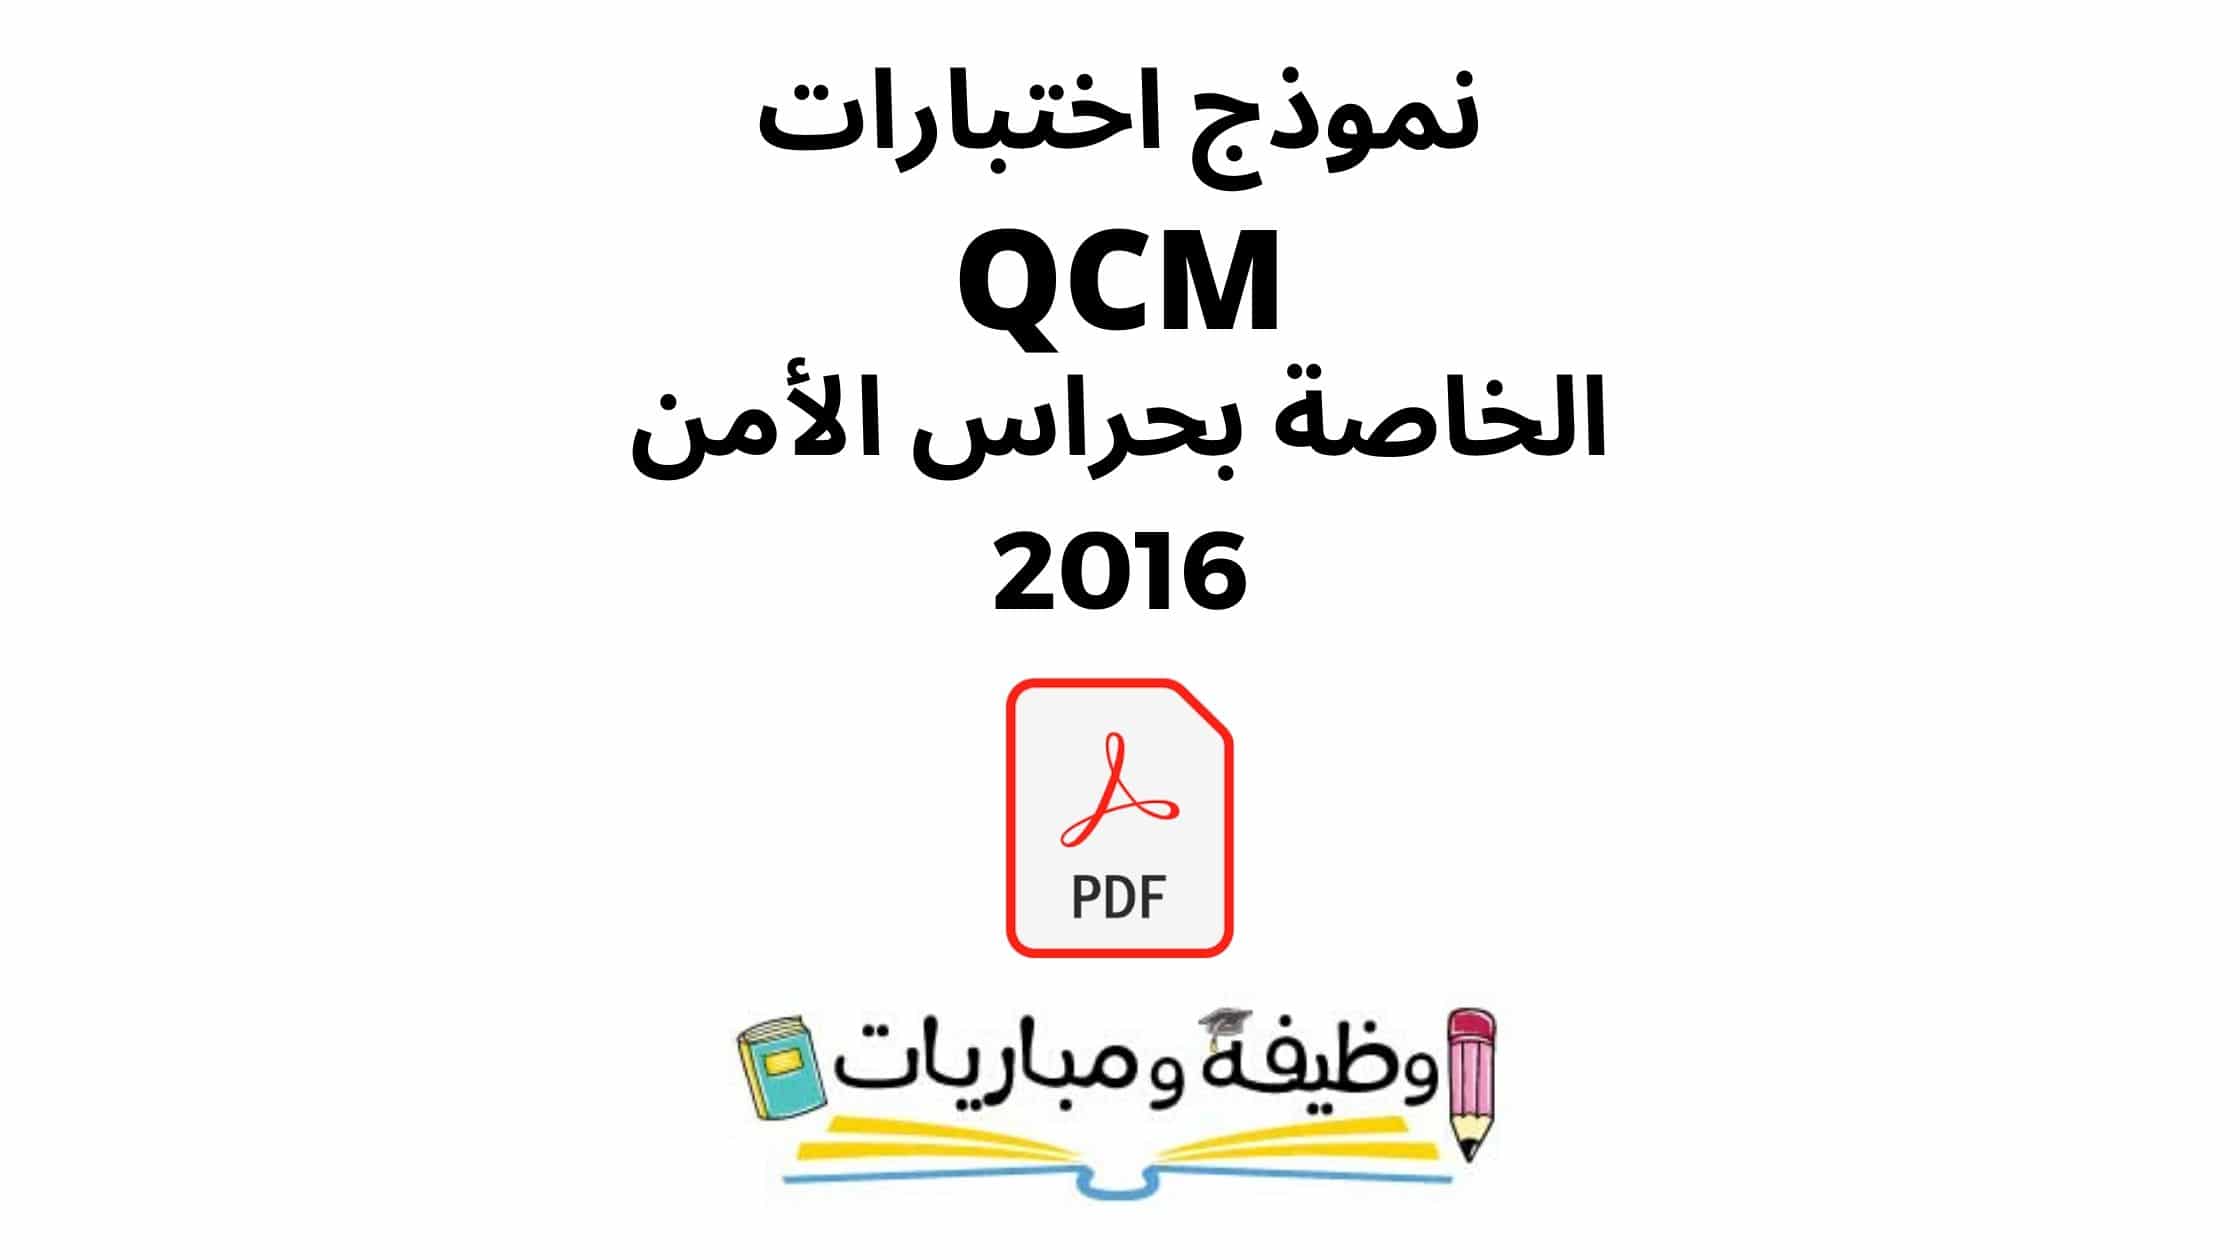 نموذج امتحان الامن الوطني qcm